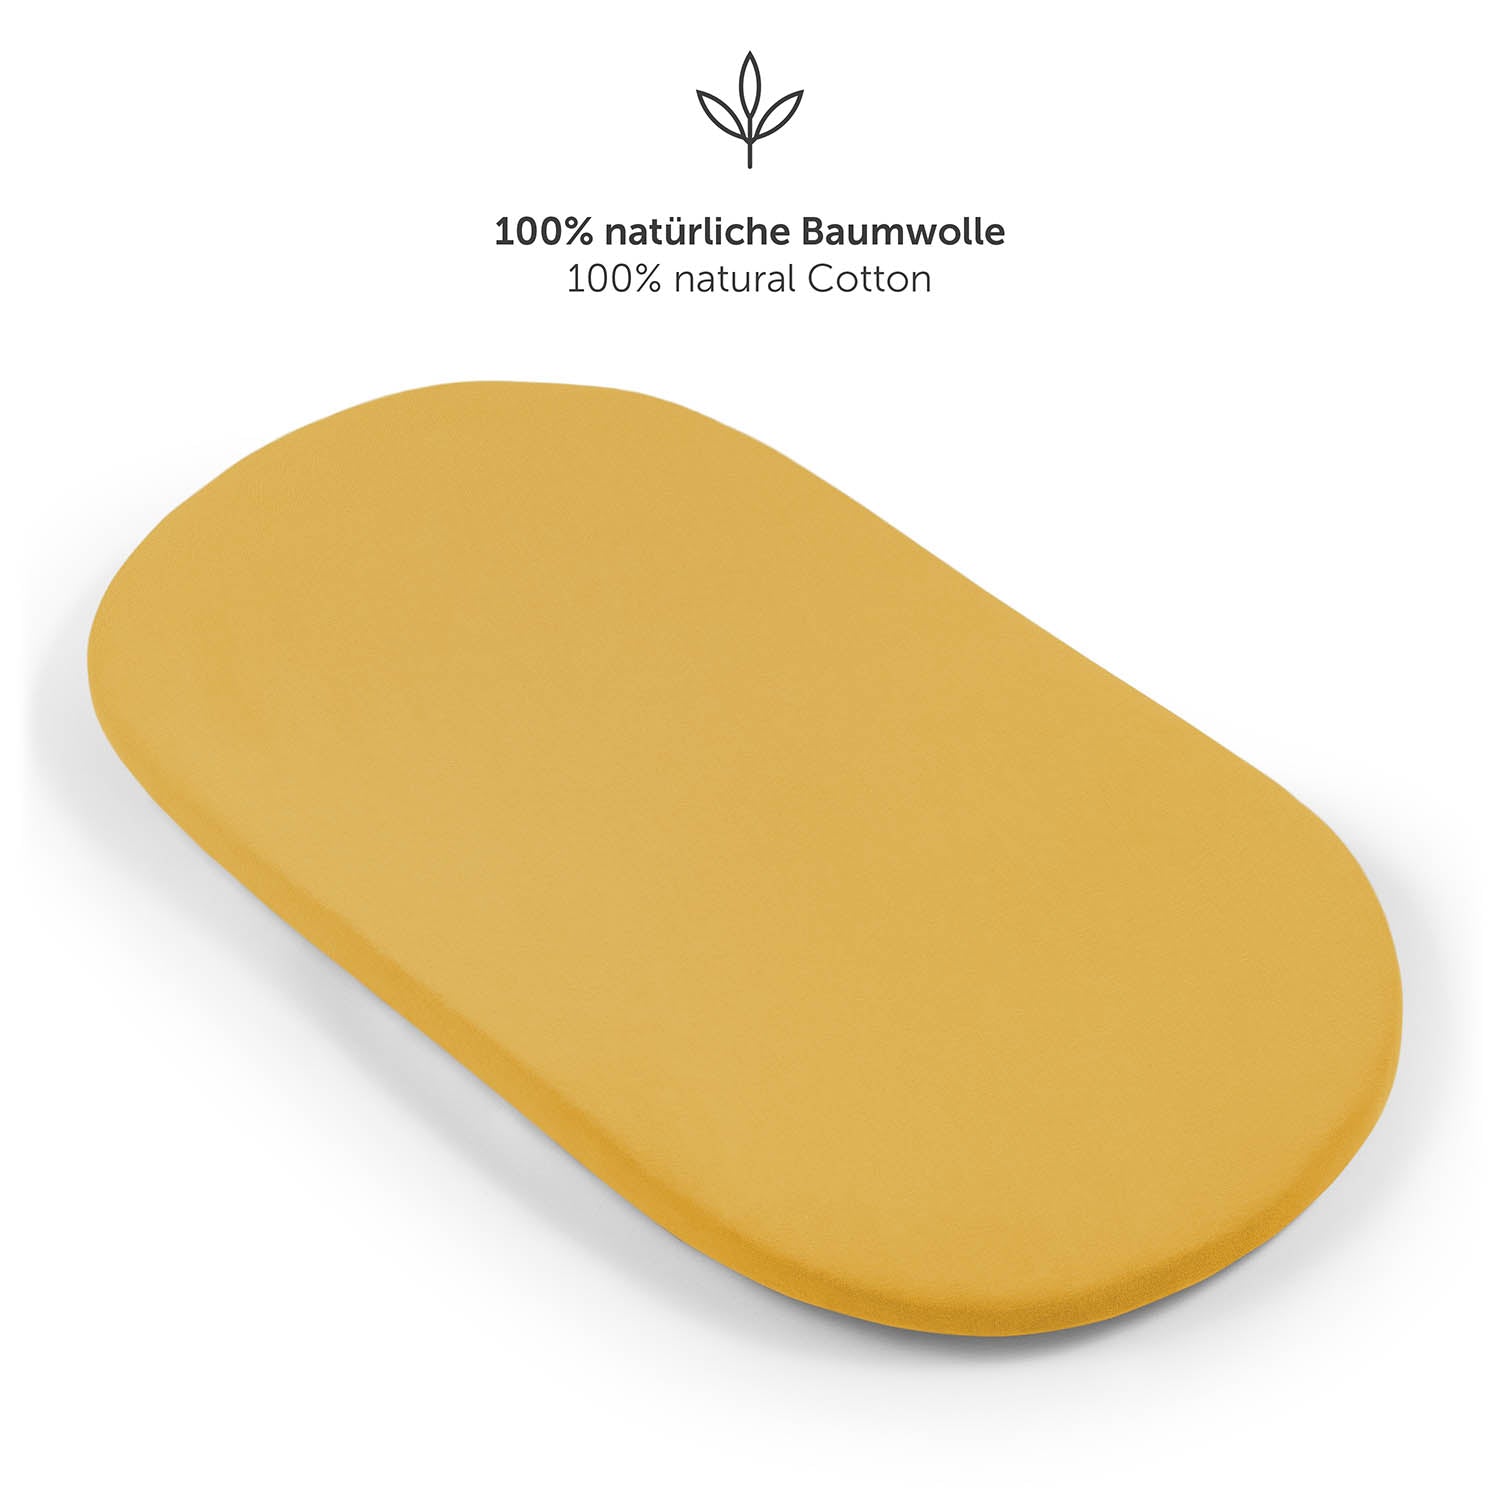 Detailansicht eines gelb Spannbetttuchs mit starkem Gummizug und Zusatz von 5 cm für perfekten Sitz.